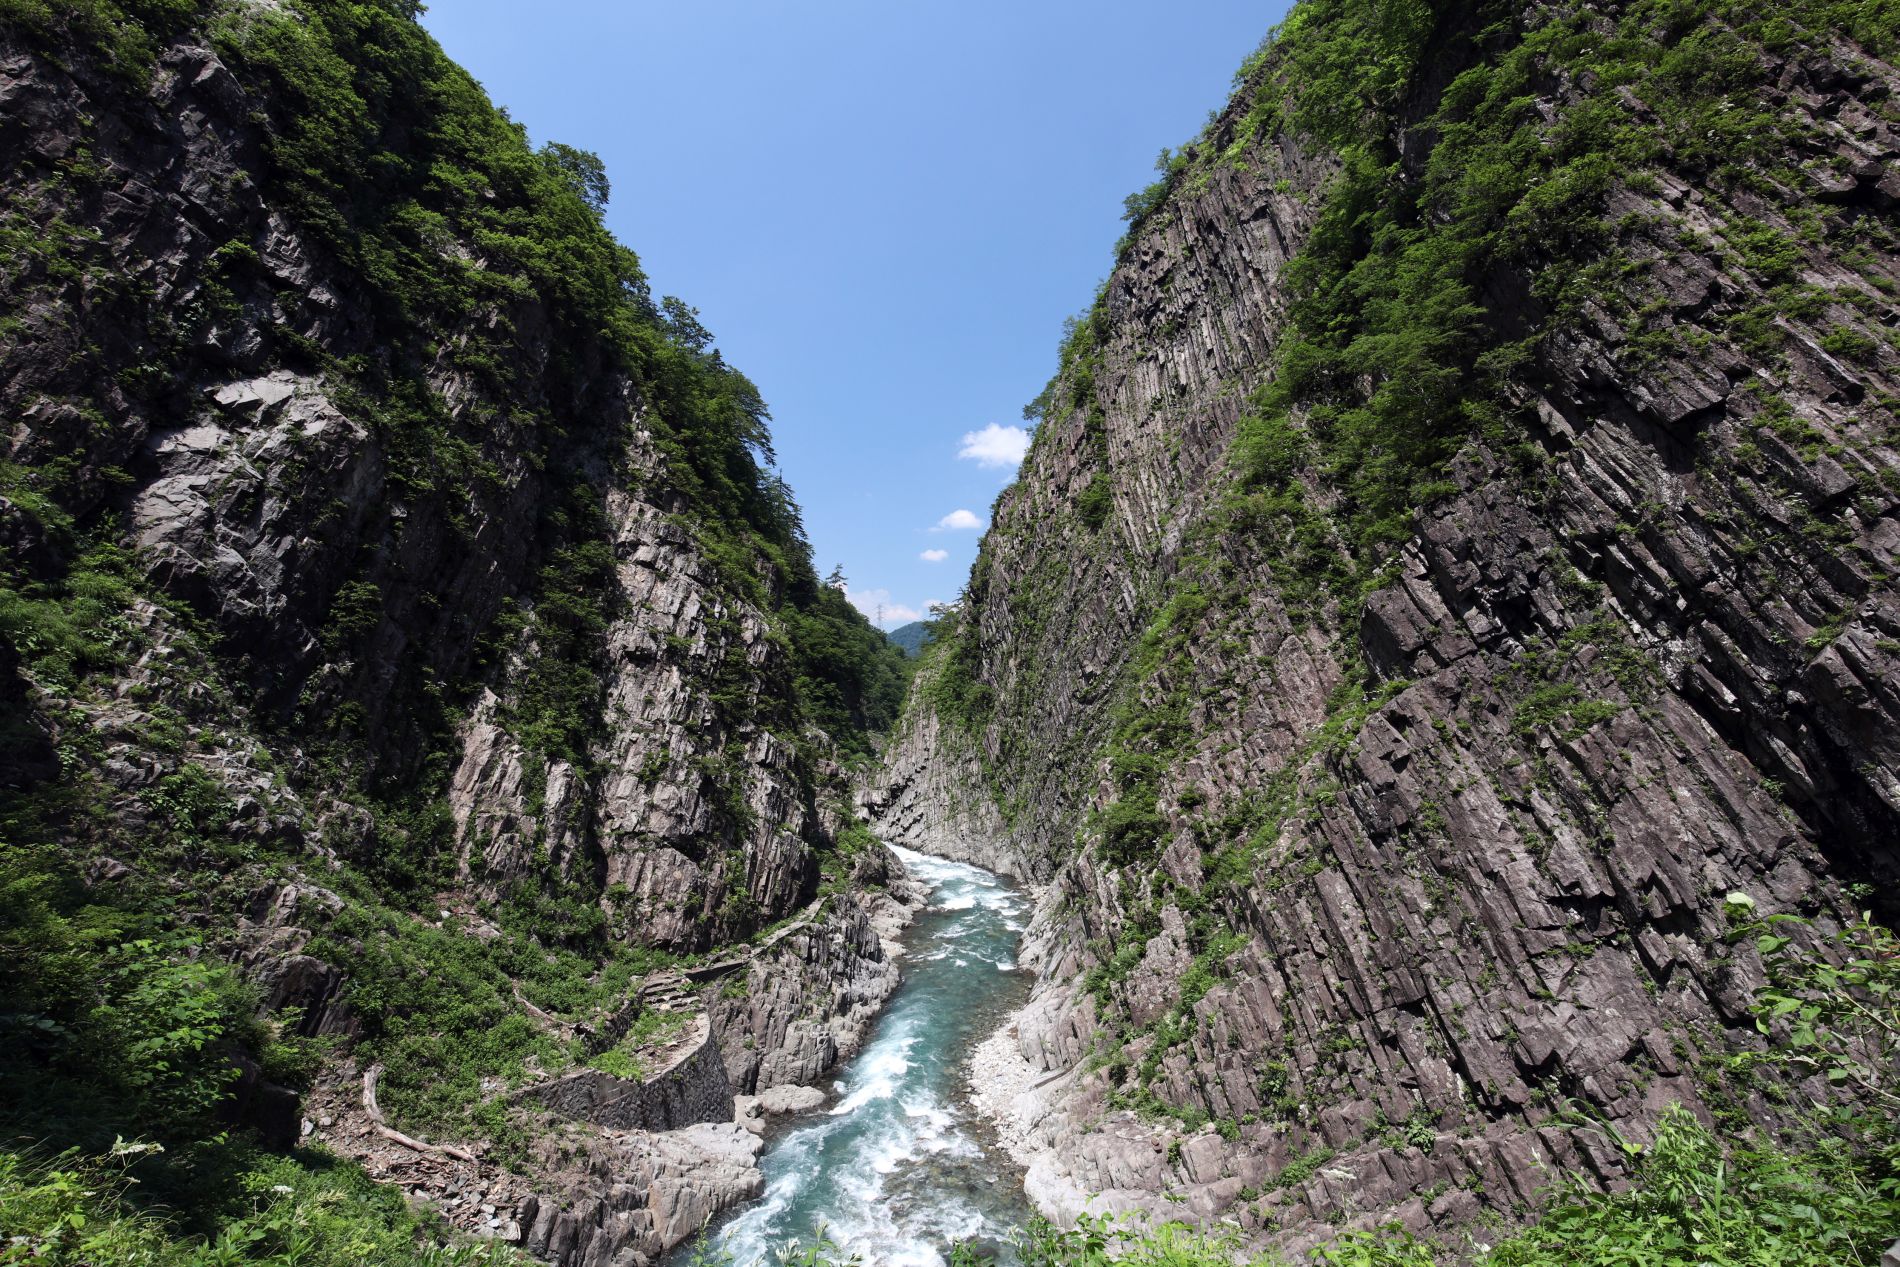 Travel Japan Ancient Scenery Gets New Audiences at Refurbished Kiyotsukyo Gorge Tunnel